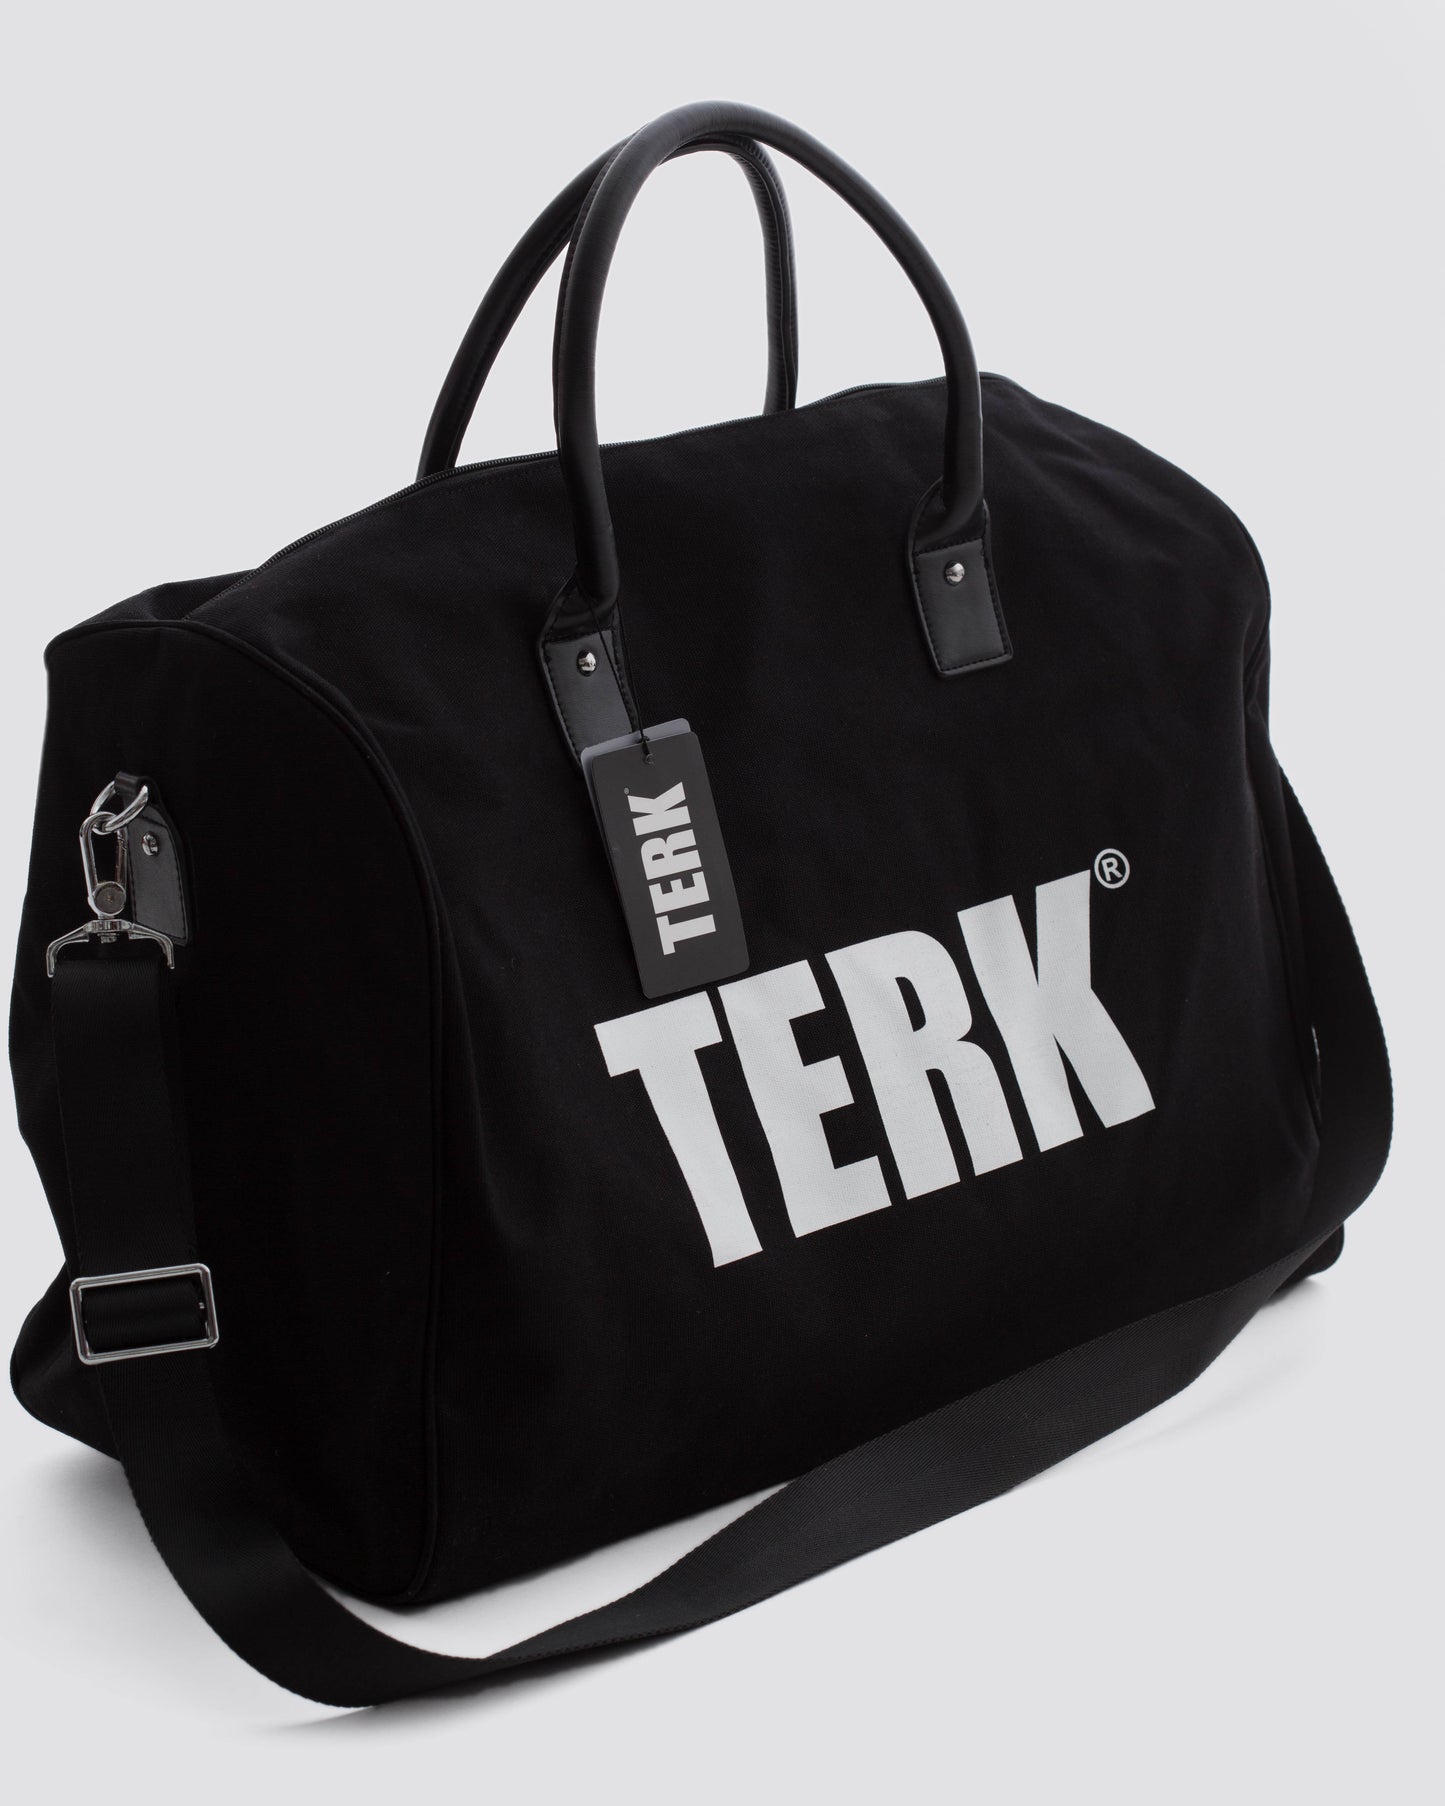 TERK BLACK DUFFLE BAG